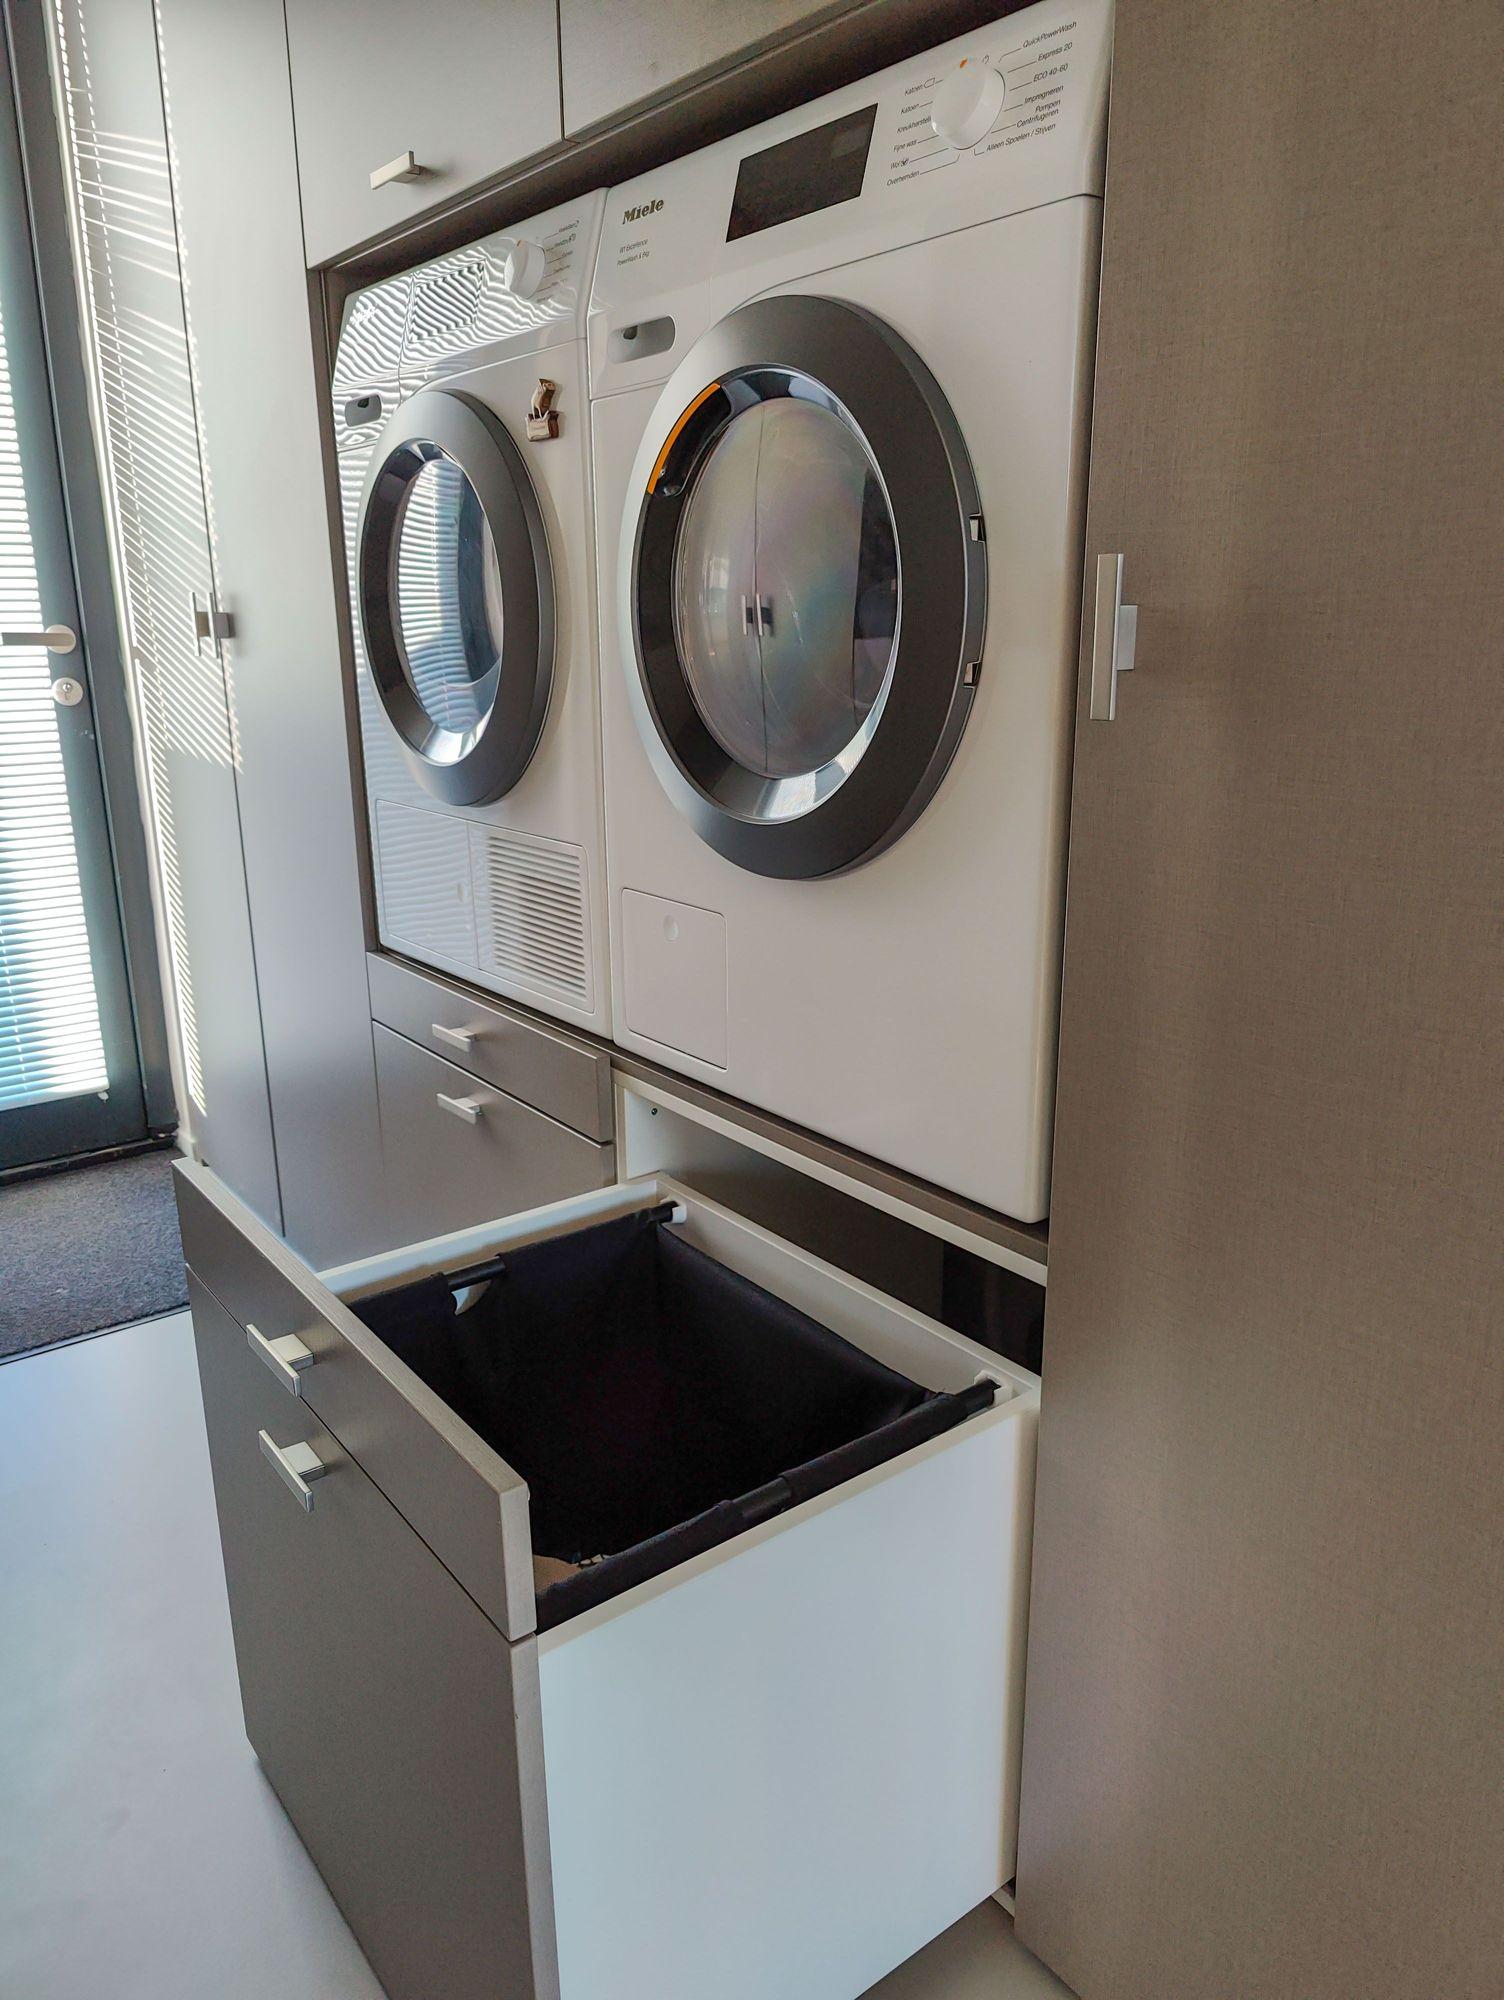 Ingebouwde wasmachine en droger met uittrekbare wasmand lade in een moderne wasmachinekast, geplaatst in een bijkeuken in Almere.